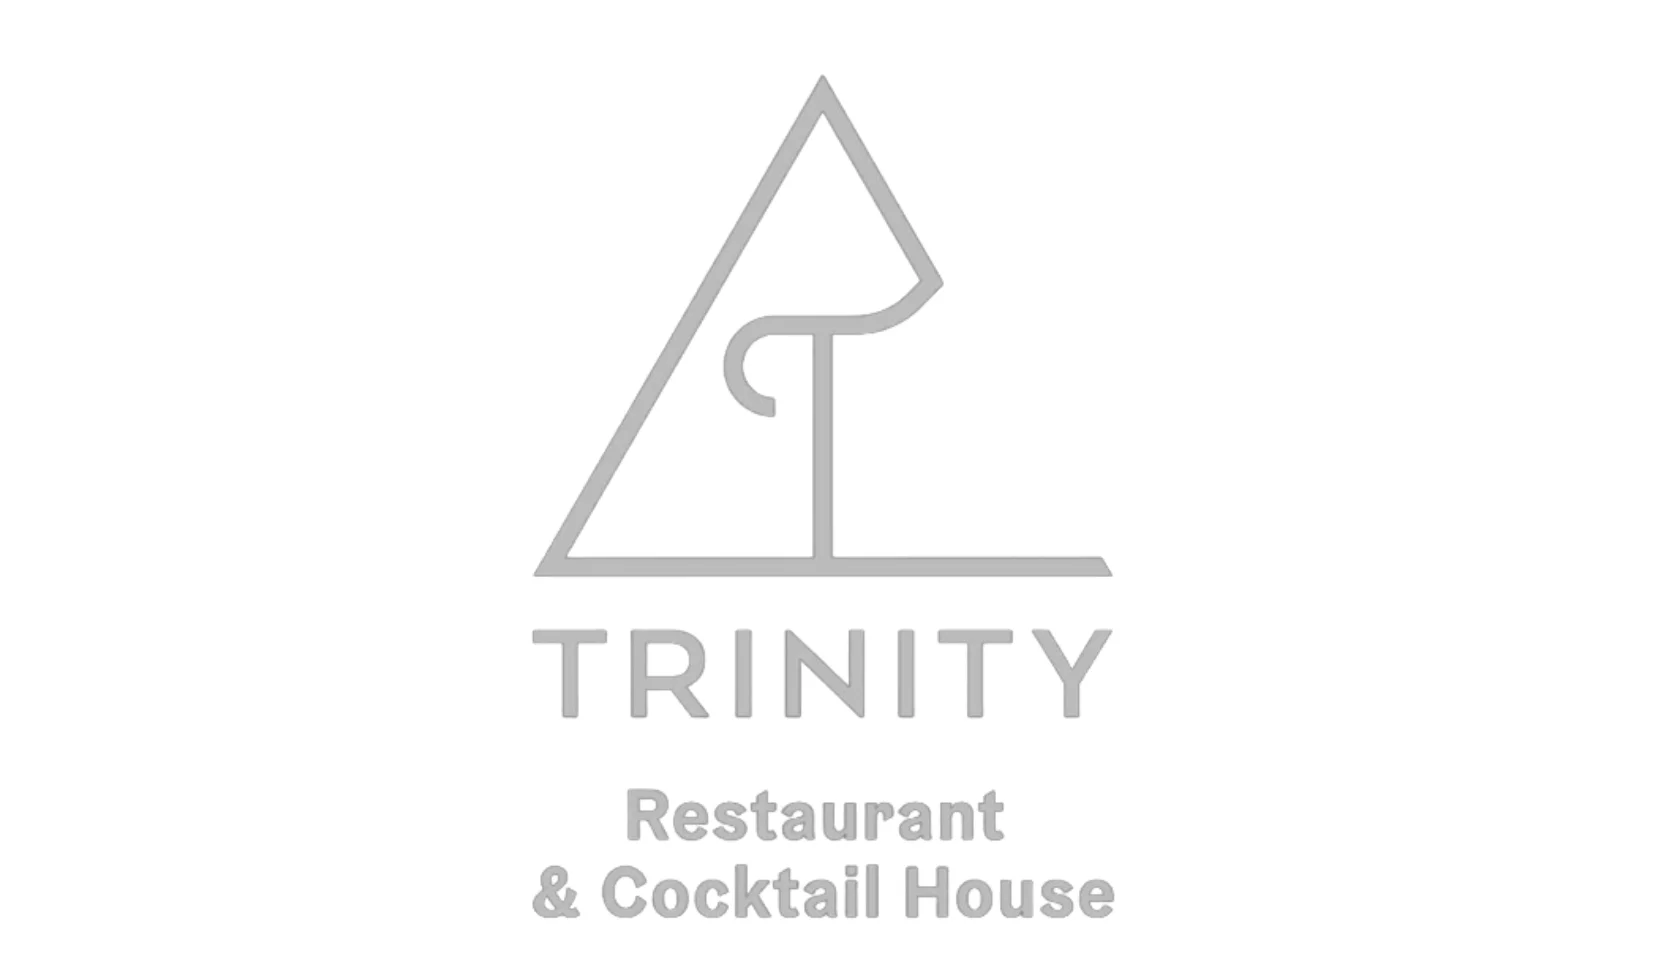 Trinity restaurant & cocktail house